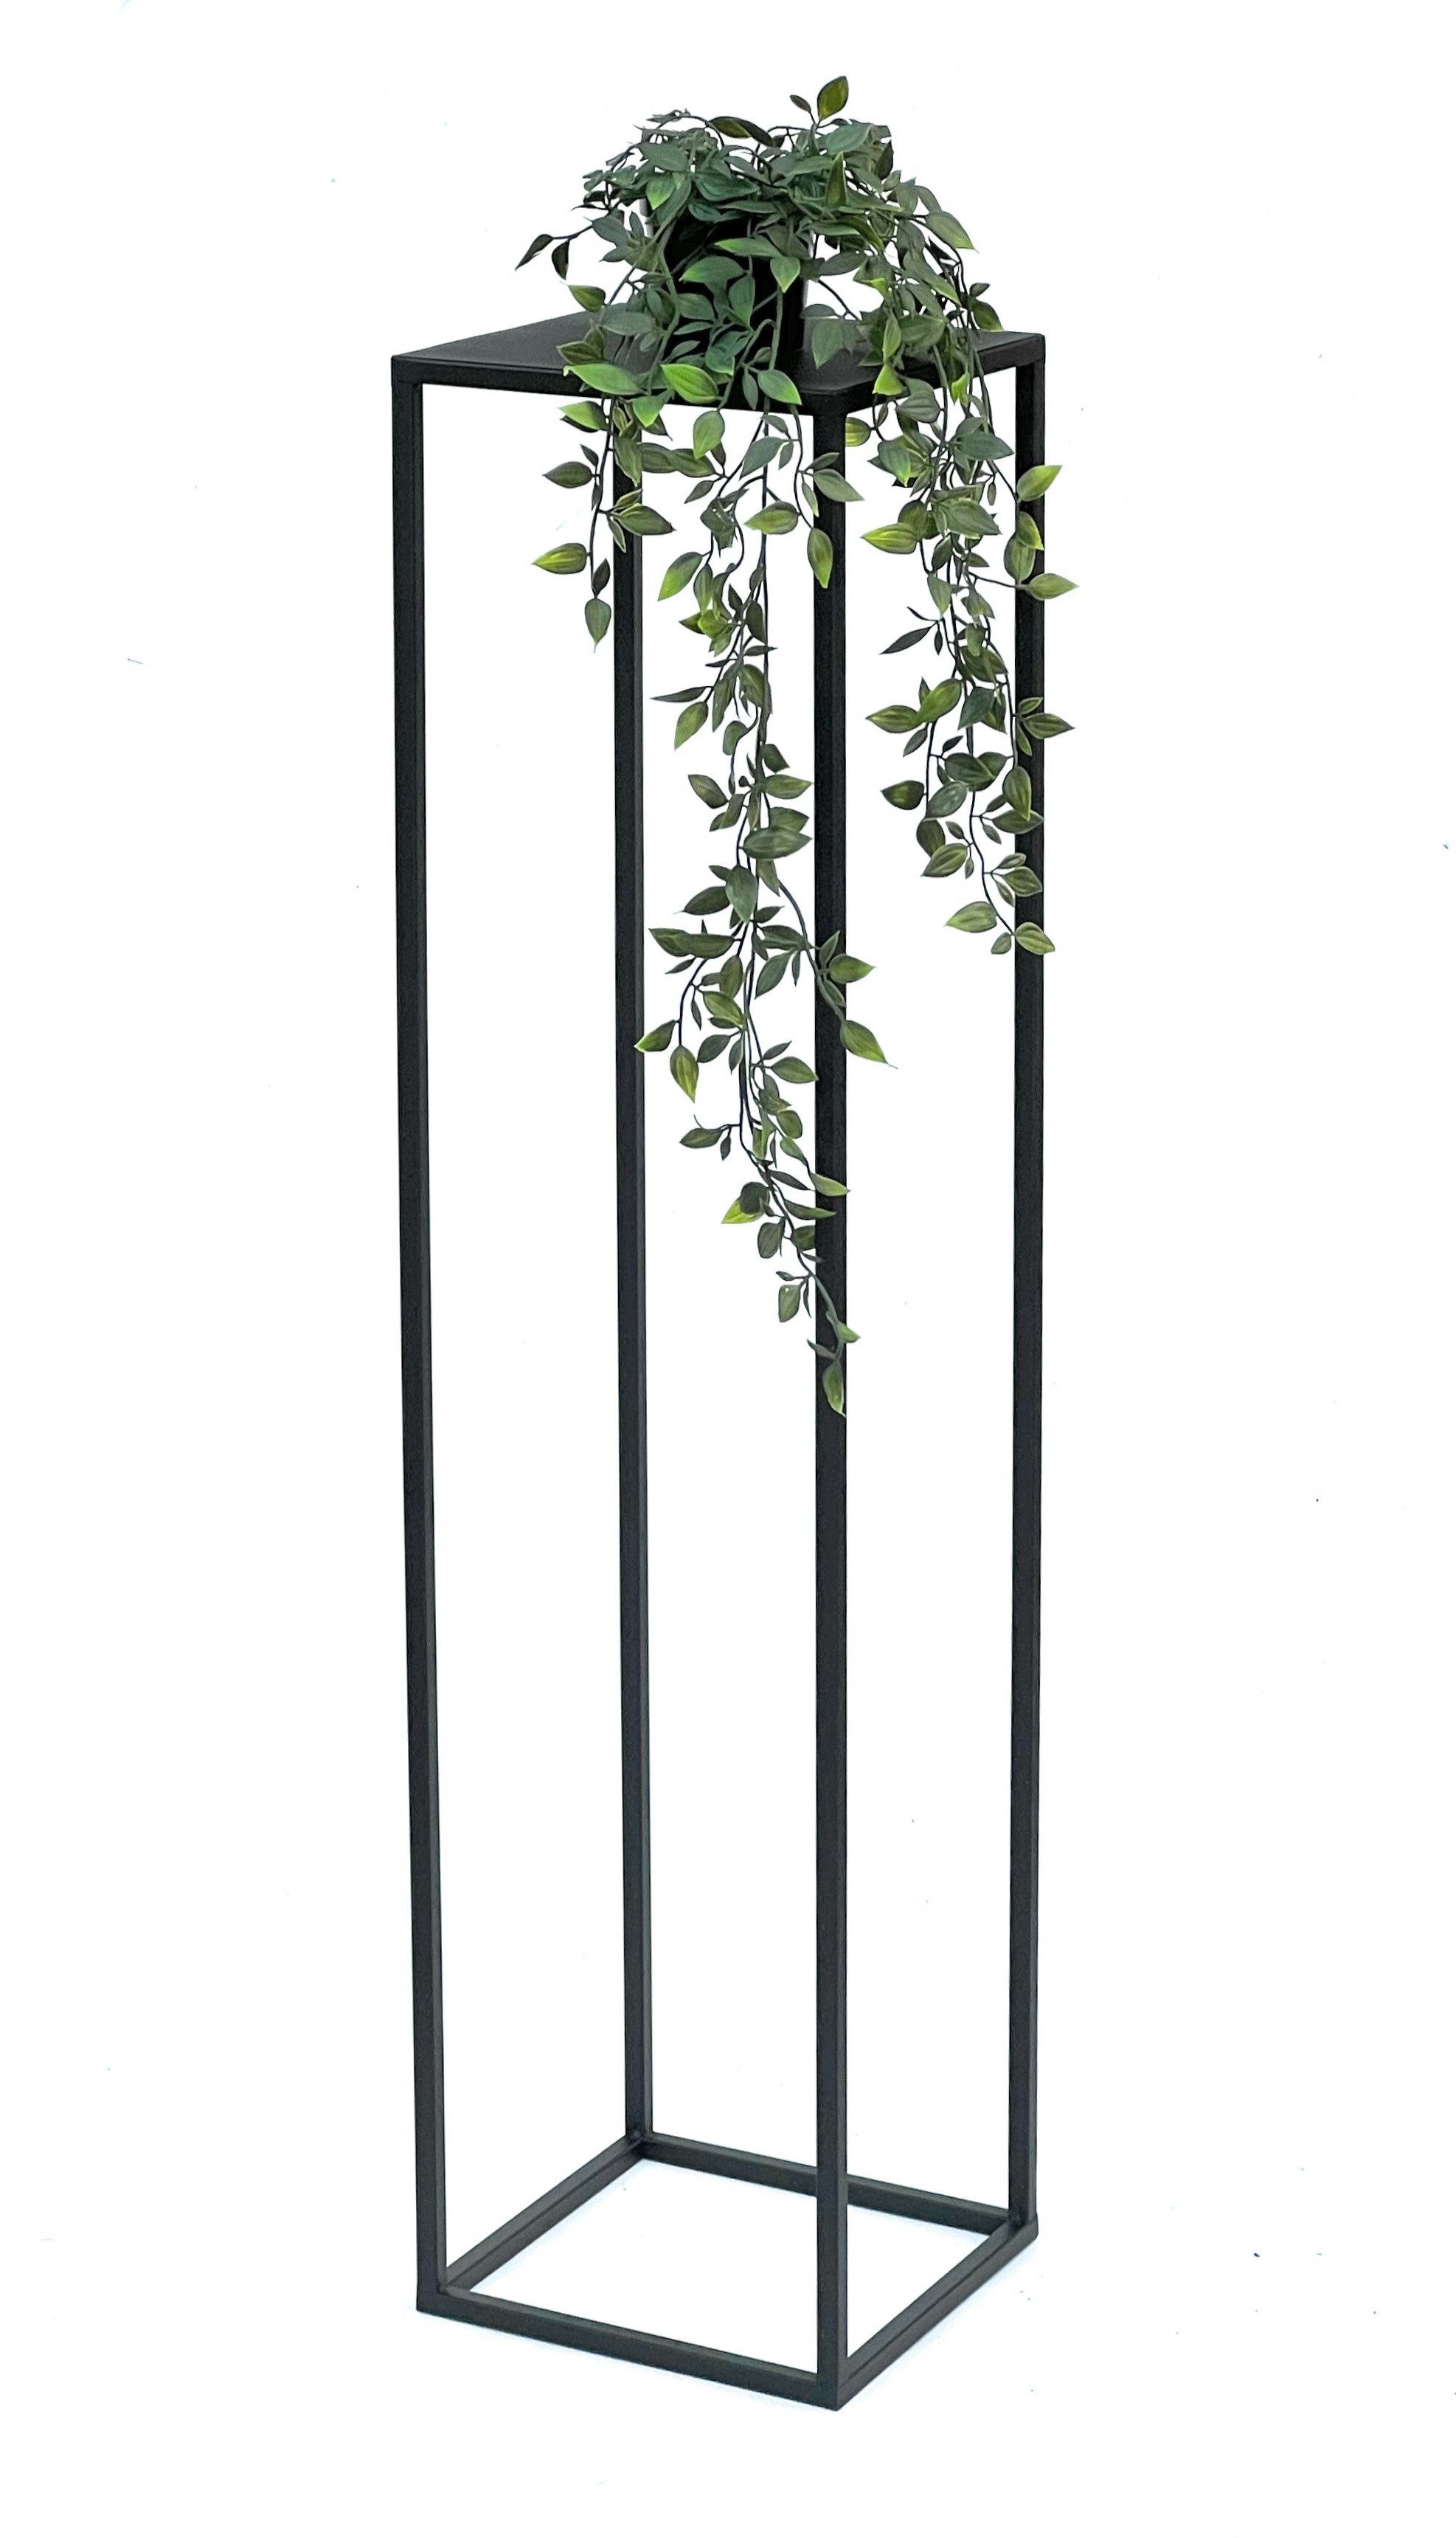 DanDiBo Blumenständer Blumenhocker Metall Schwarz Eckig 100 cm Beistelltisch Modern